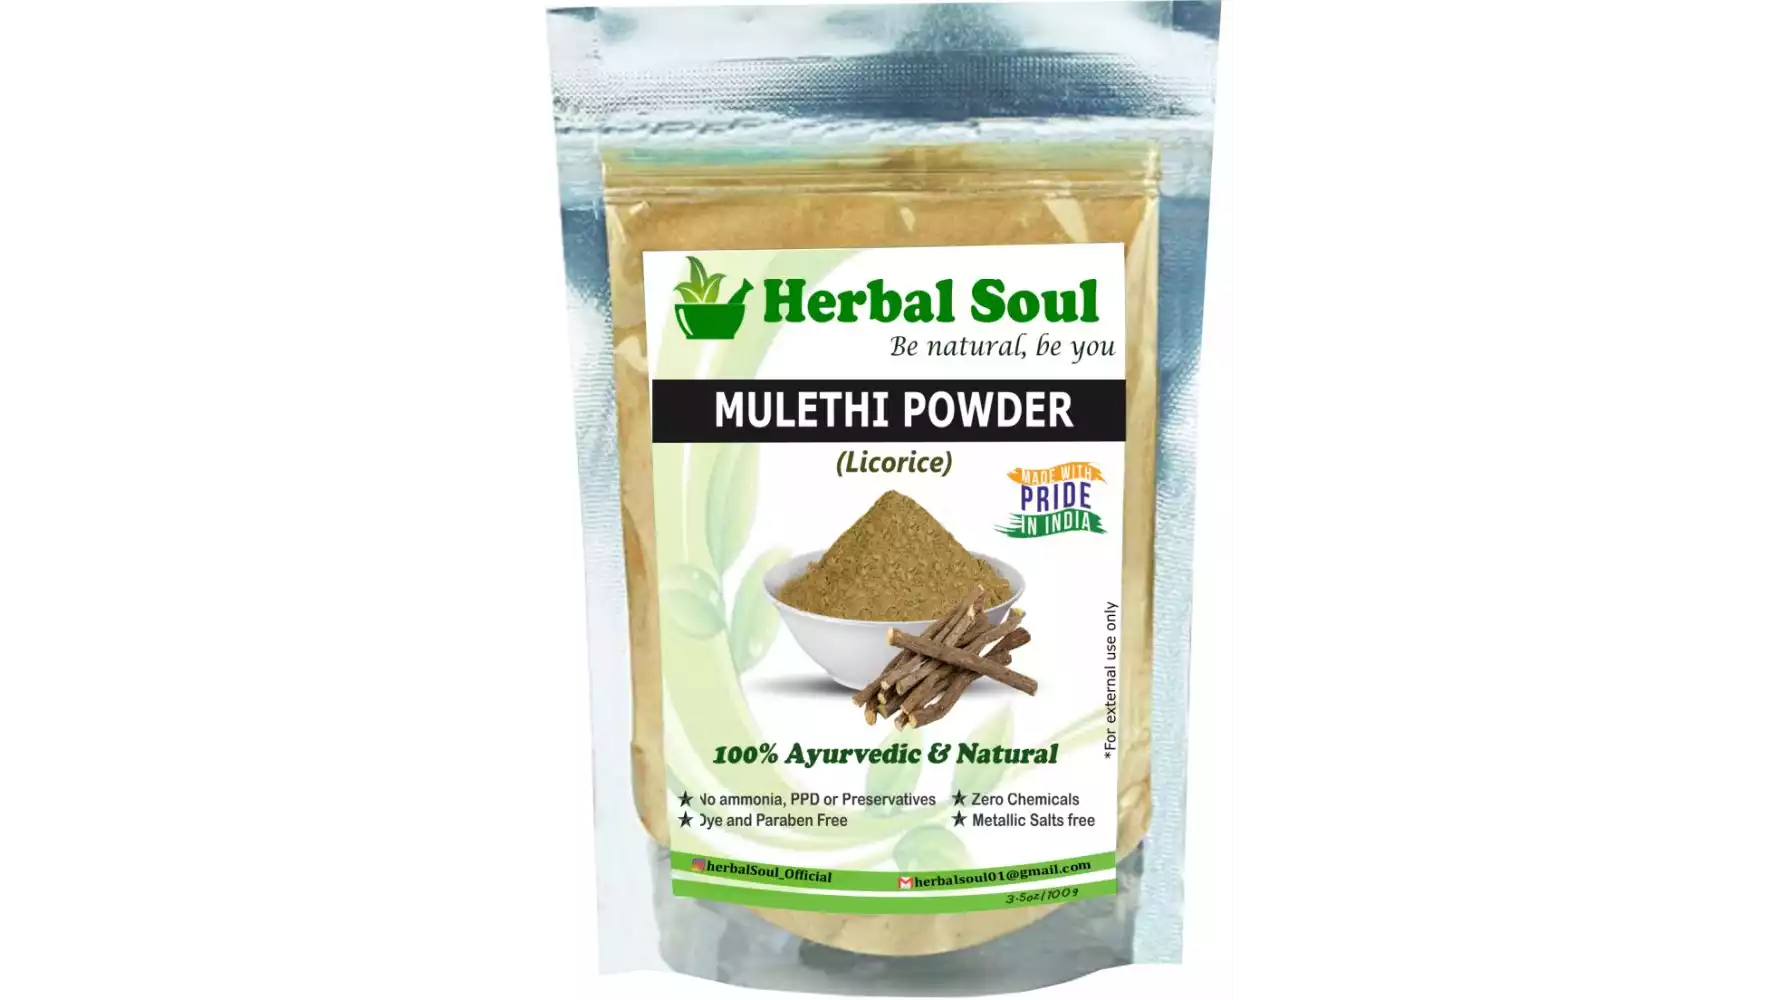 Herbal Soul Mulethi Powder (Licorice) (100g)